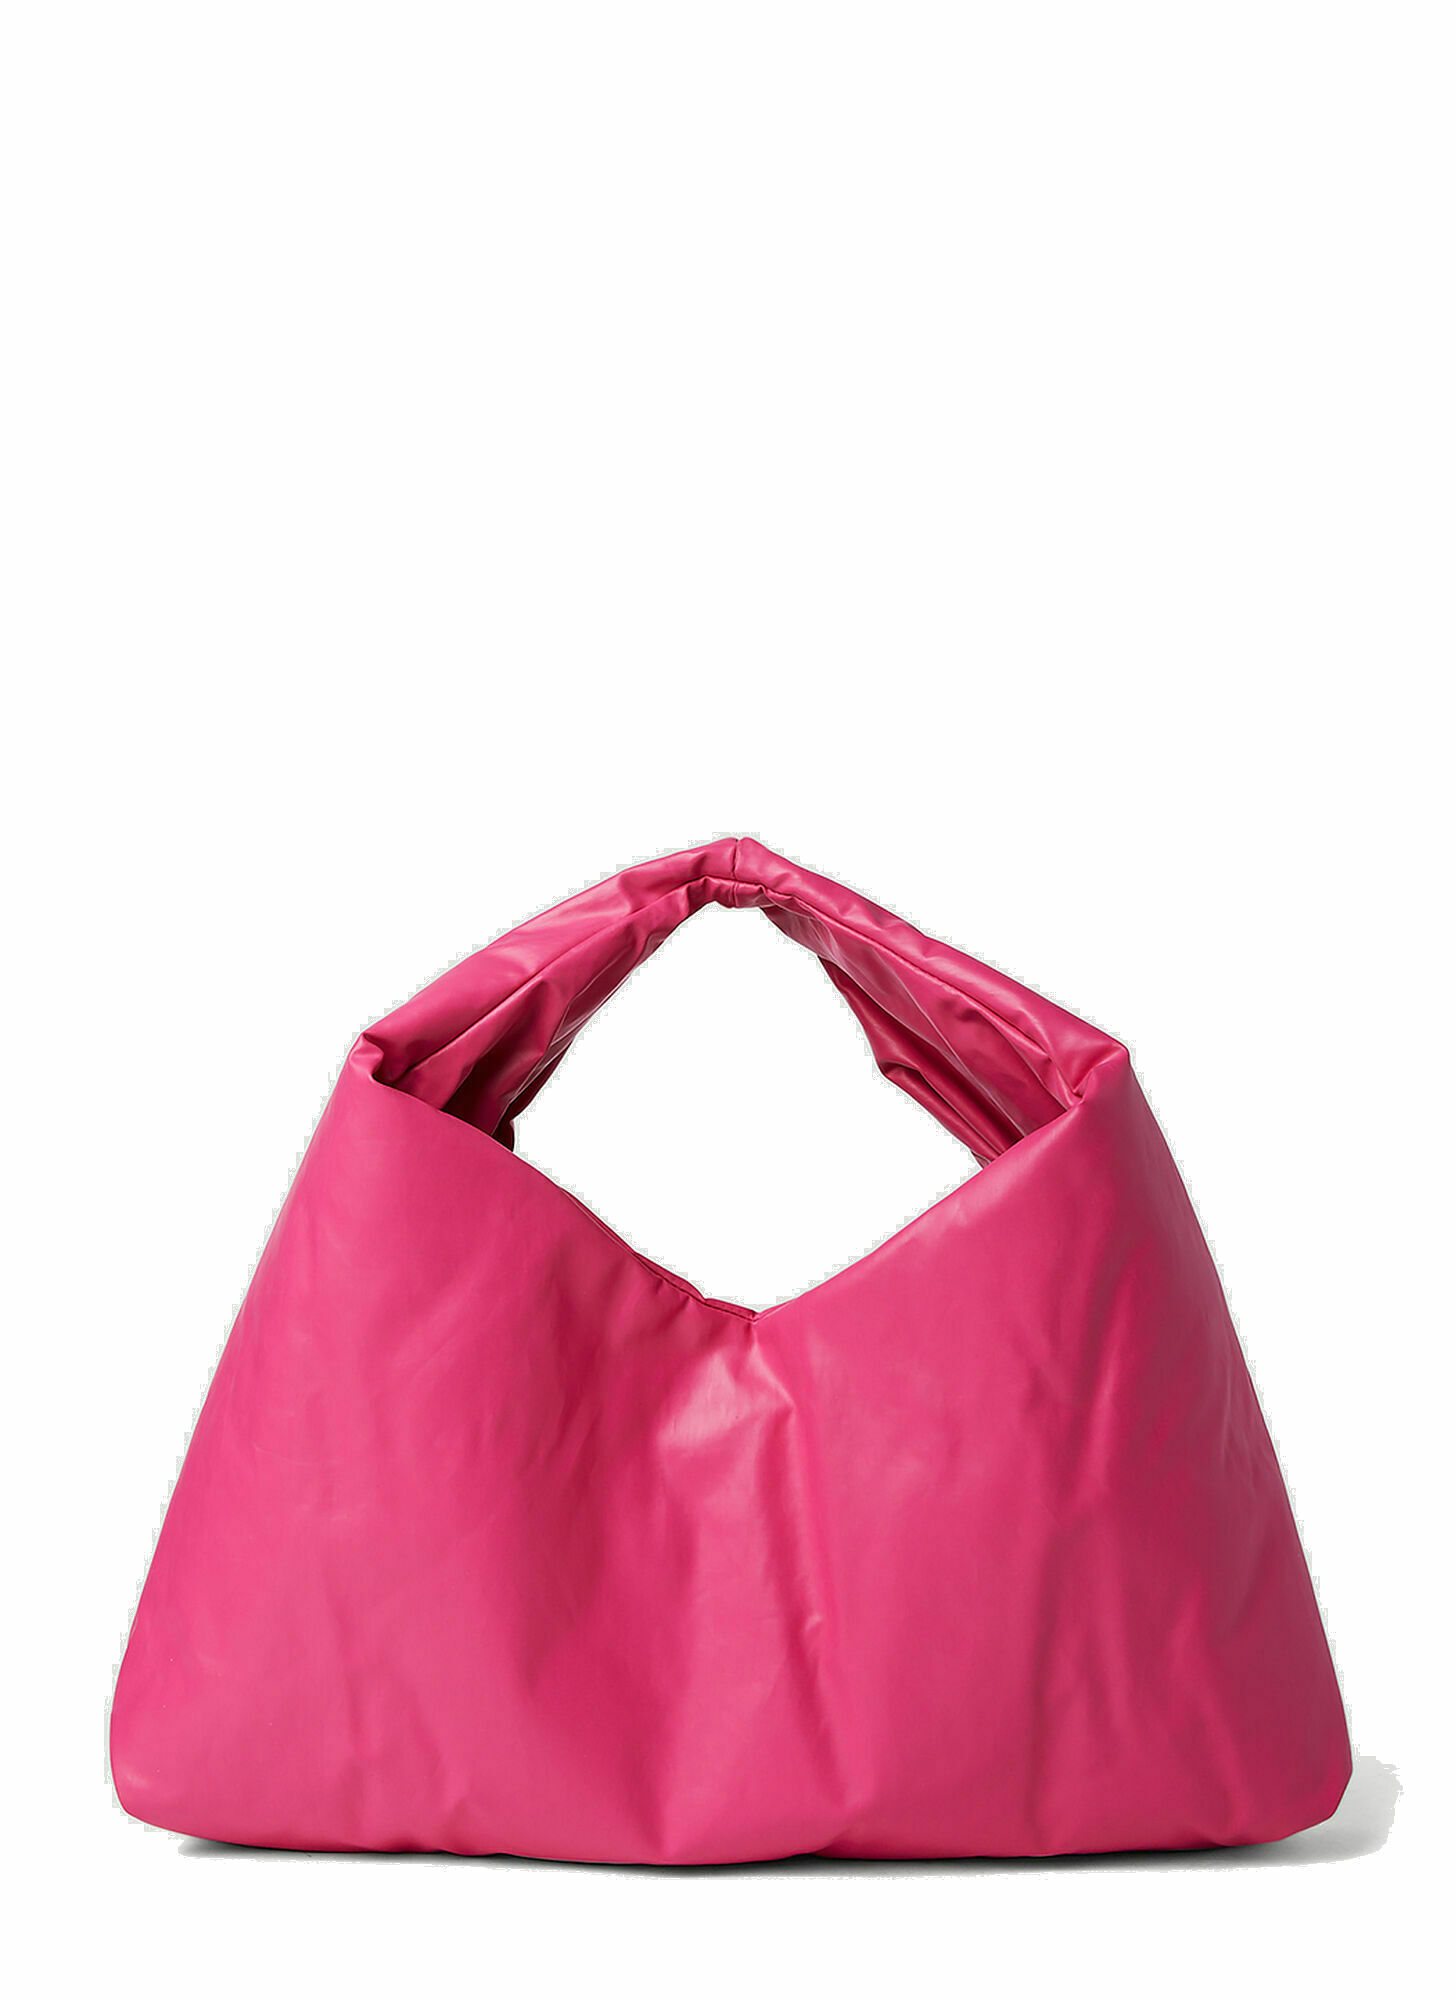 Anchor Small Handbag in Pink Kassl Editions